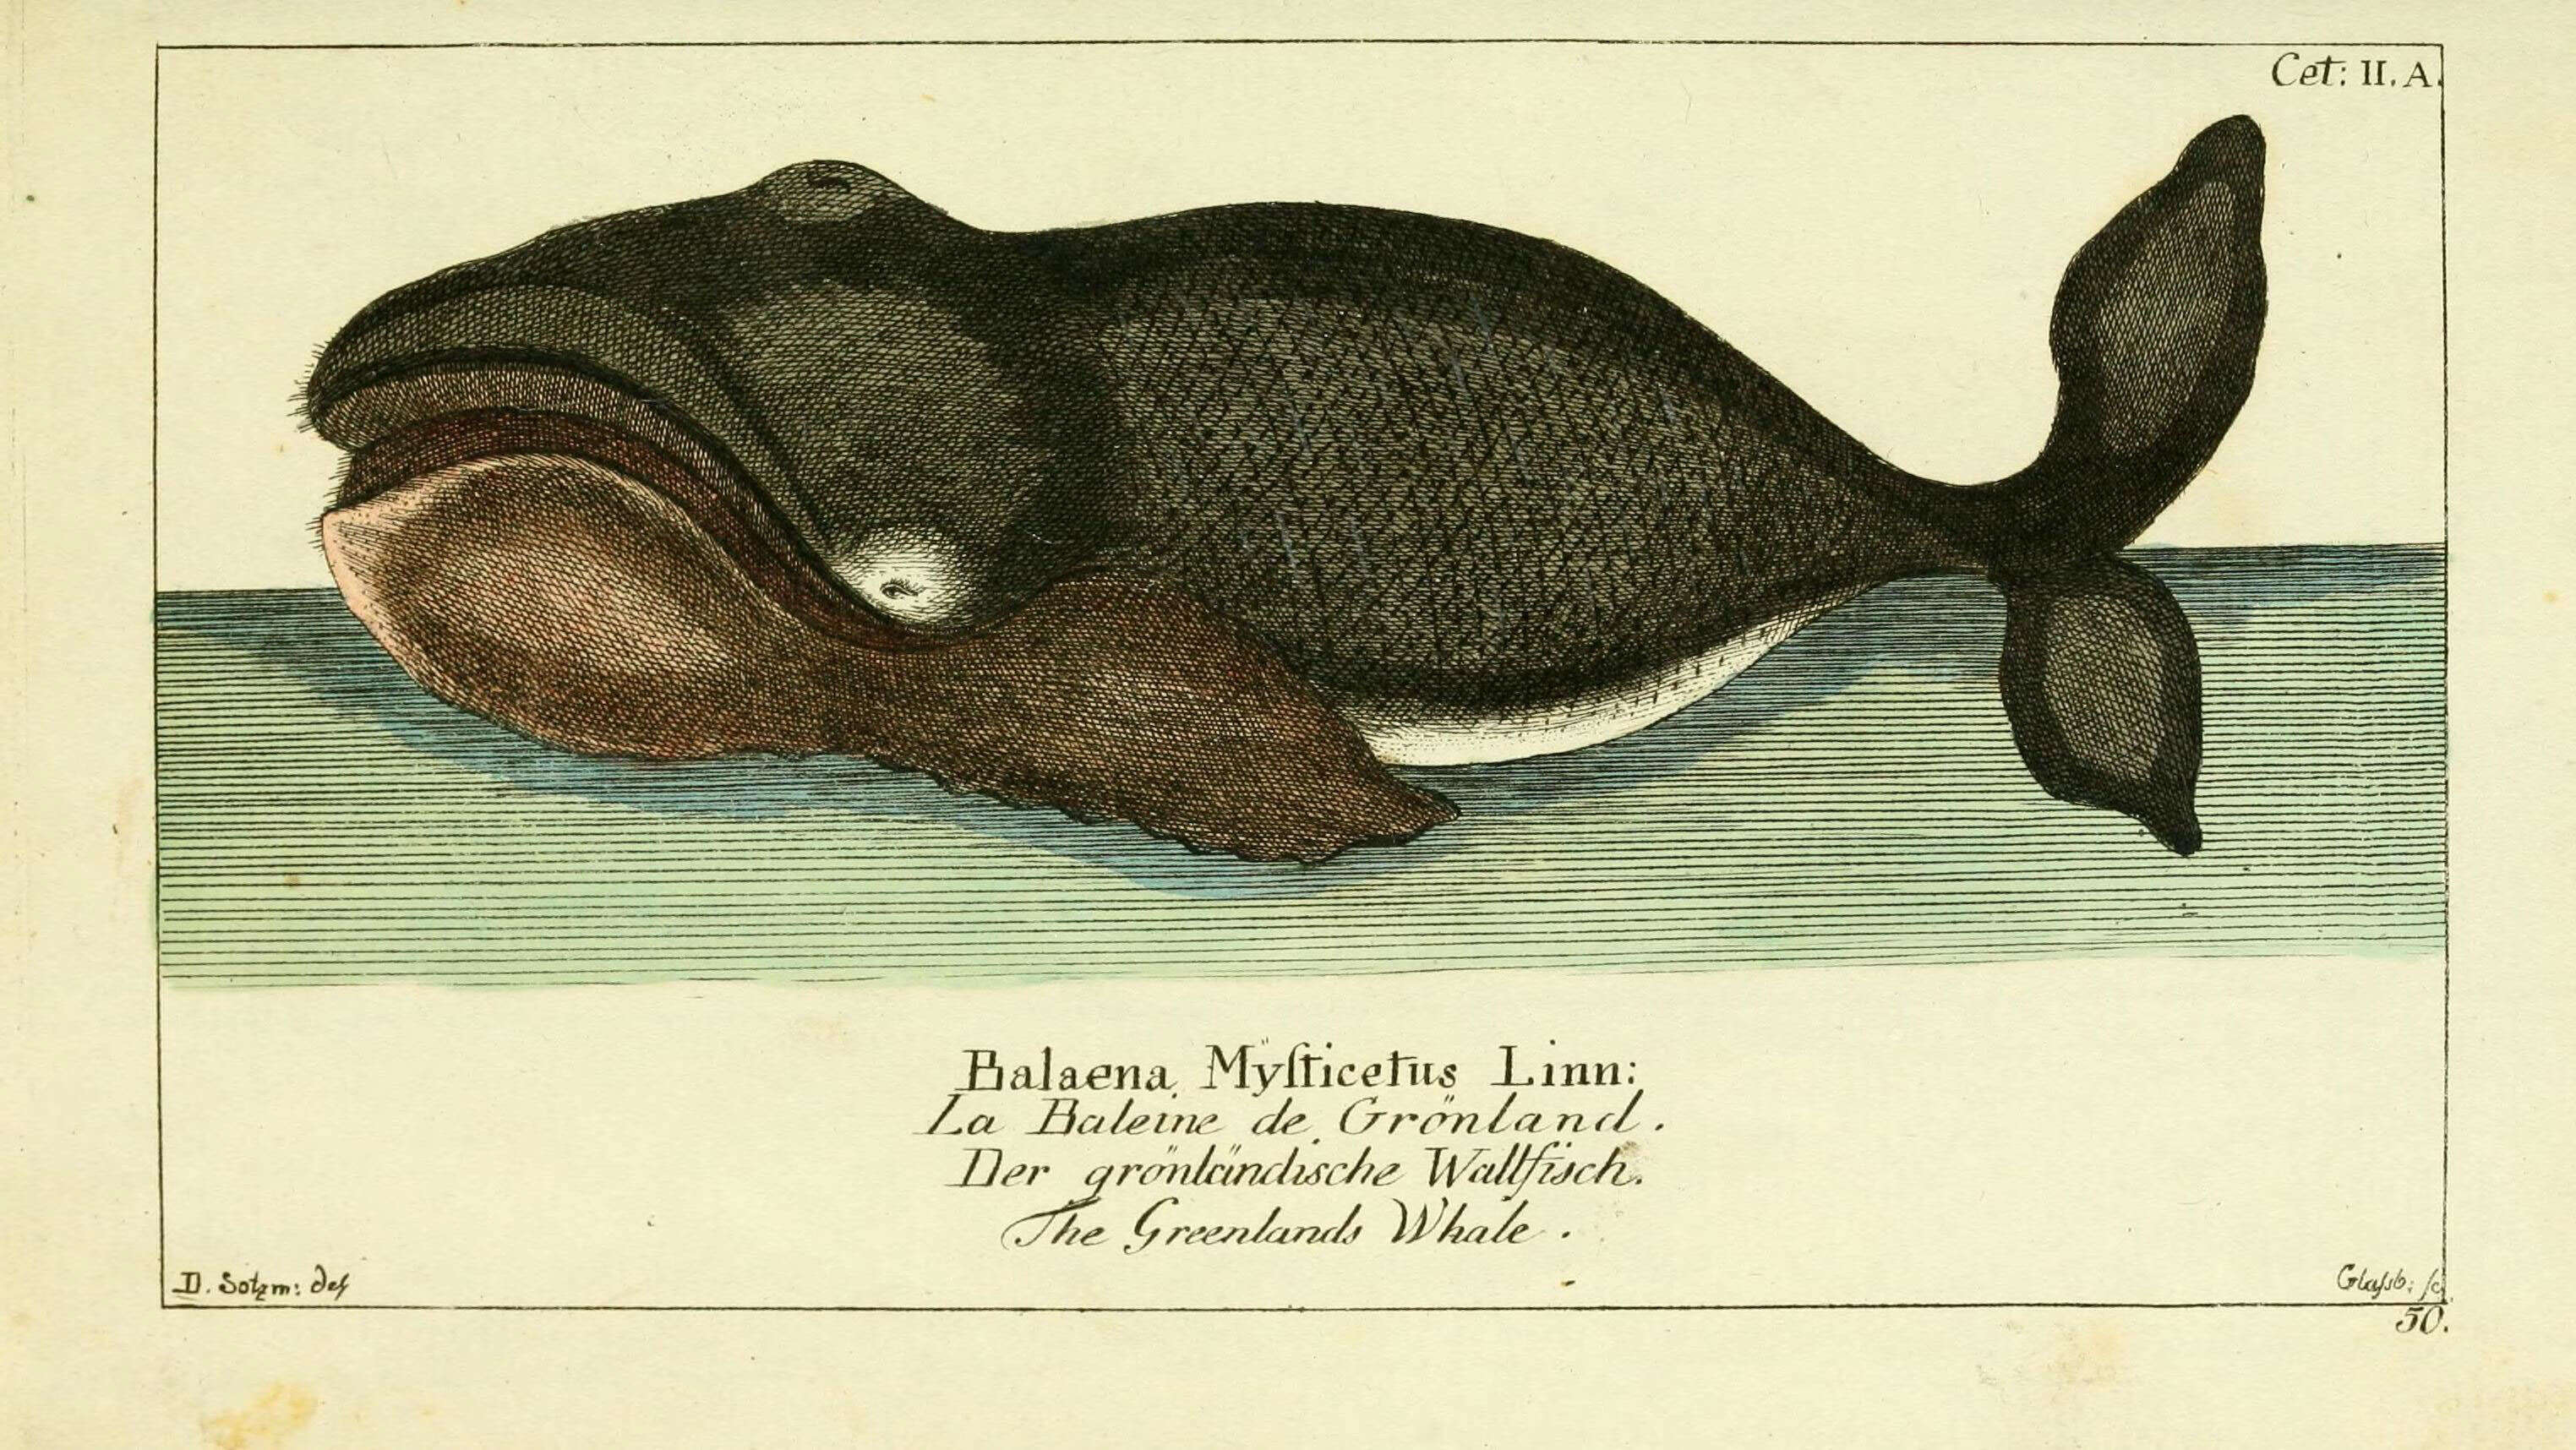 Image of Balaena Linnaeus 1758